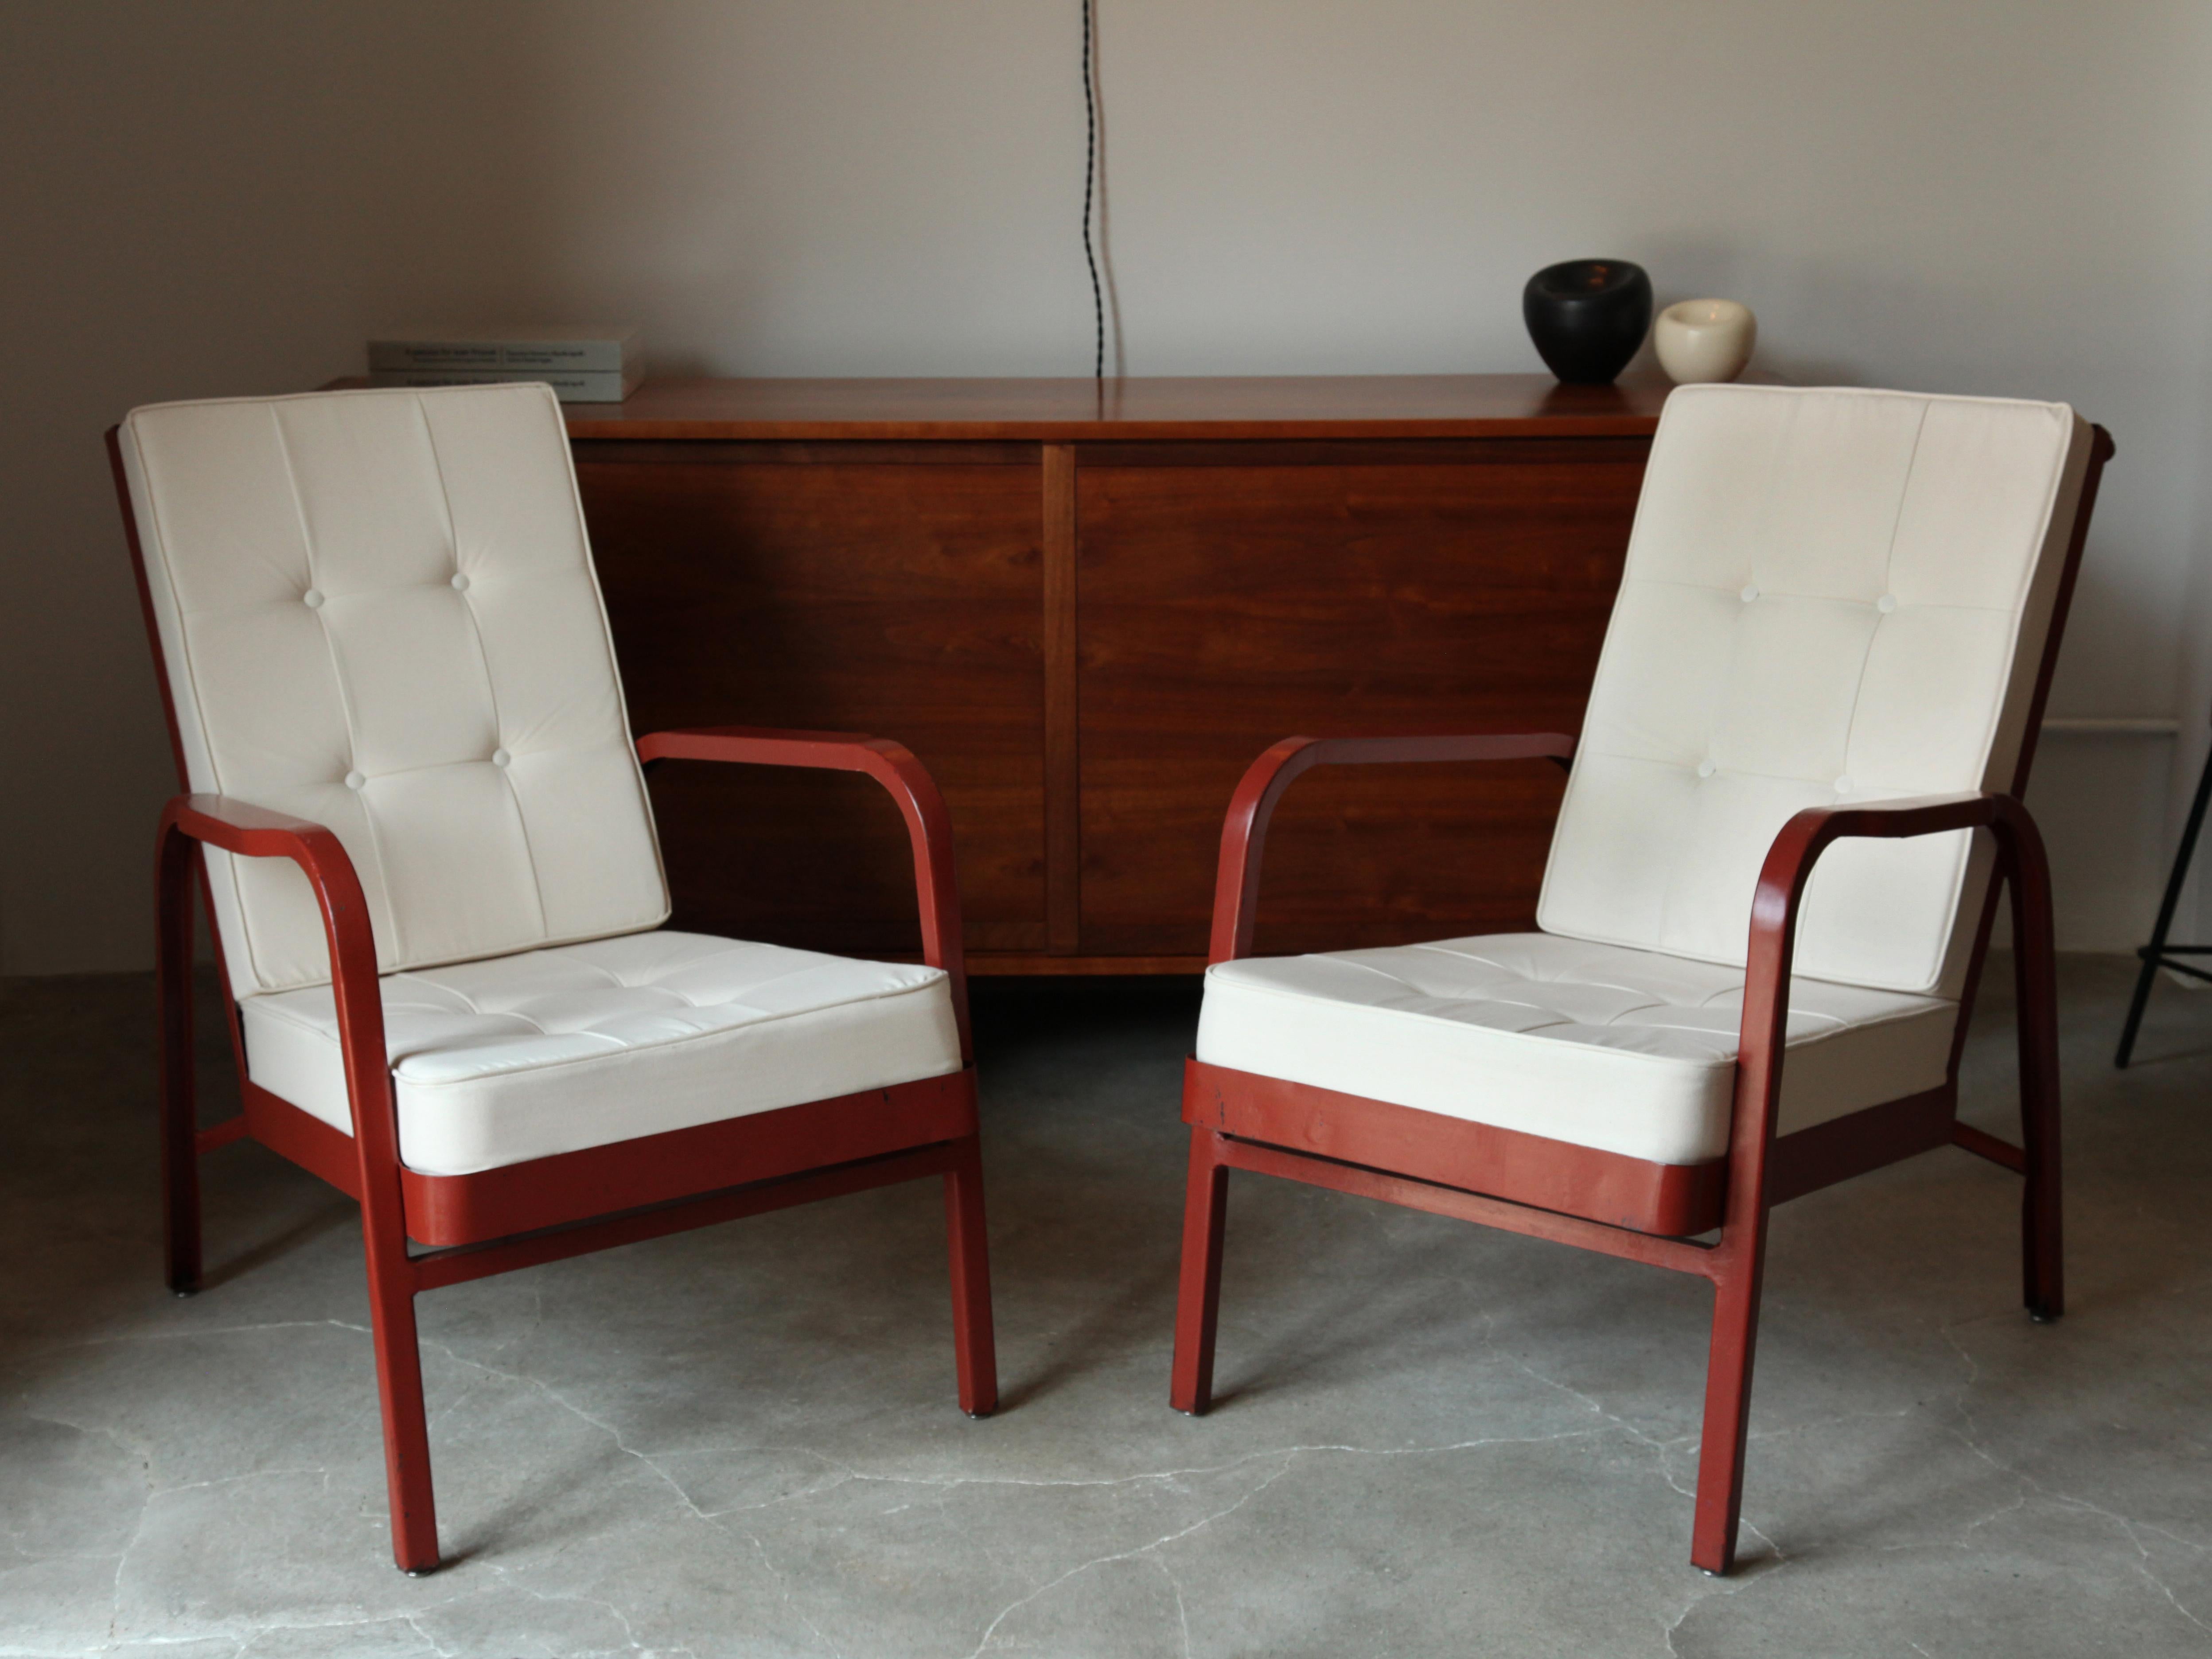 Excellent pair of armchairs by Jean Prouvé and Jules Leleu from Martel de Janville Sanatorium, Plateau d'Assy, France, circa 1936.